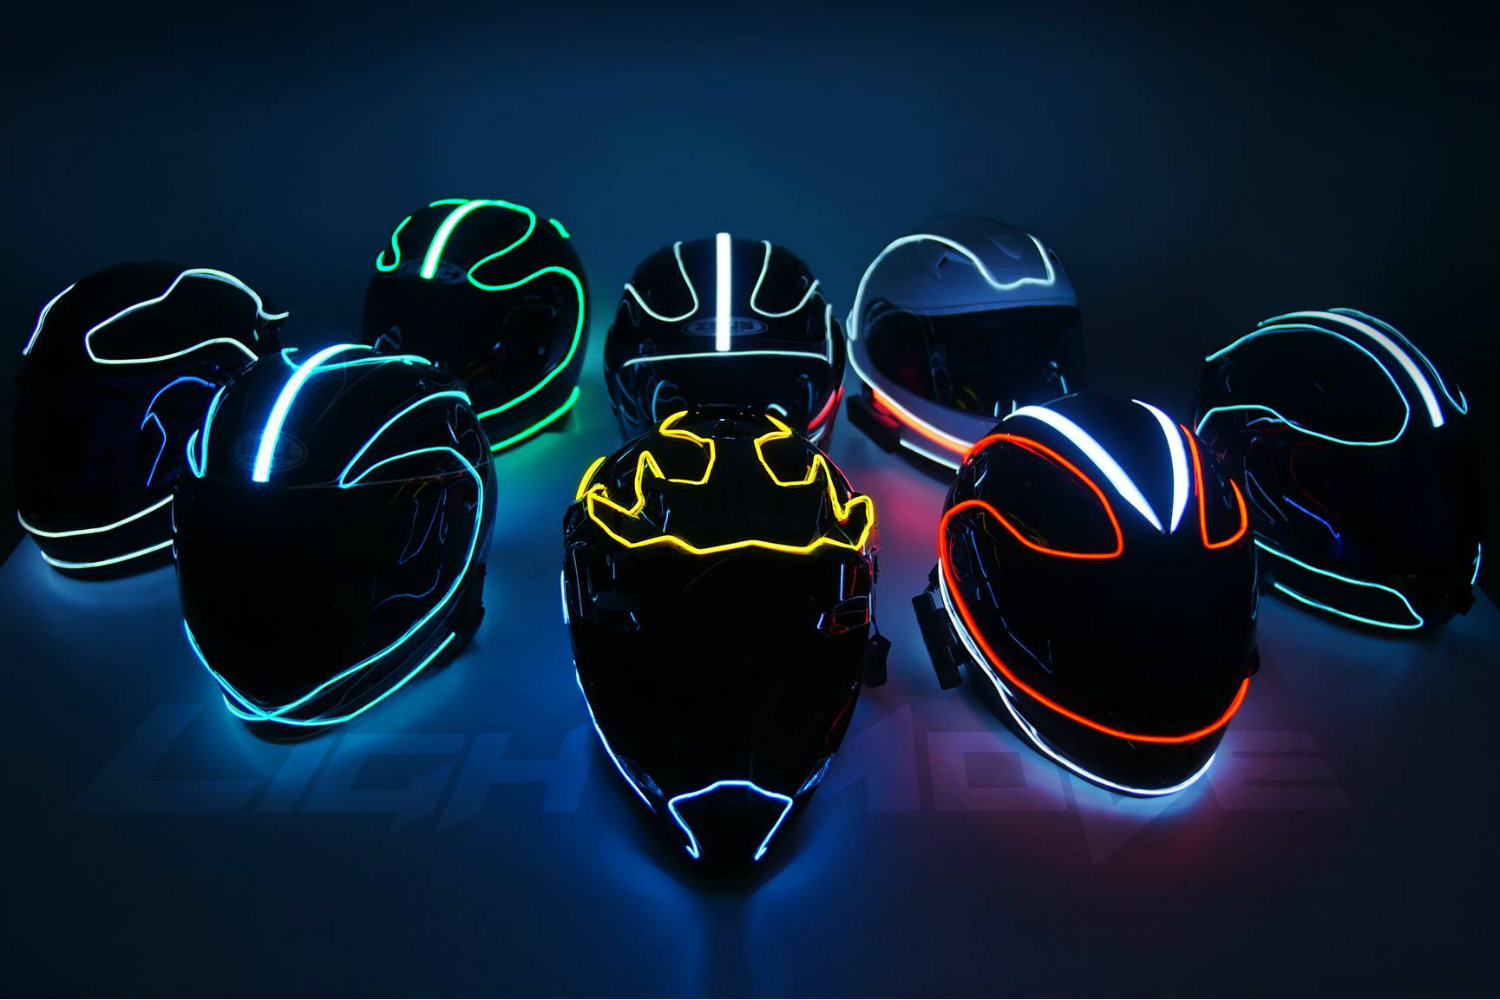 lightmode, helmet, bike lights, motorcycle